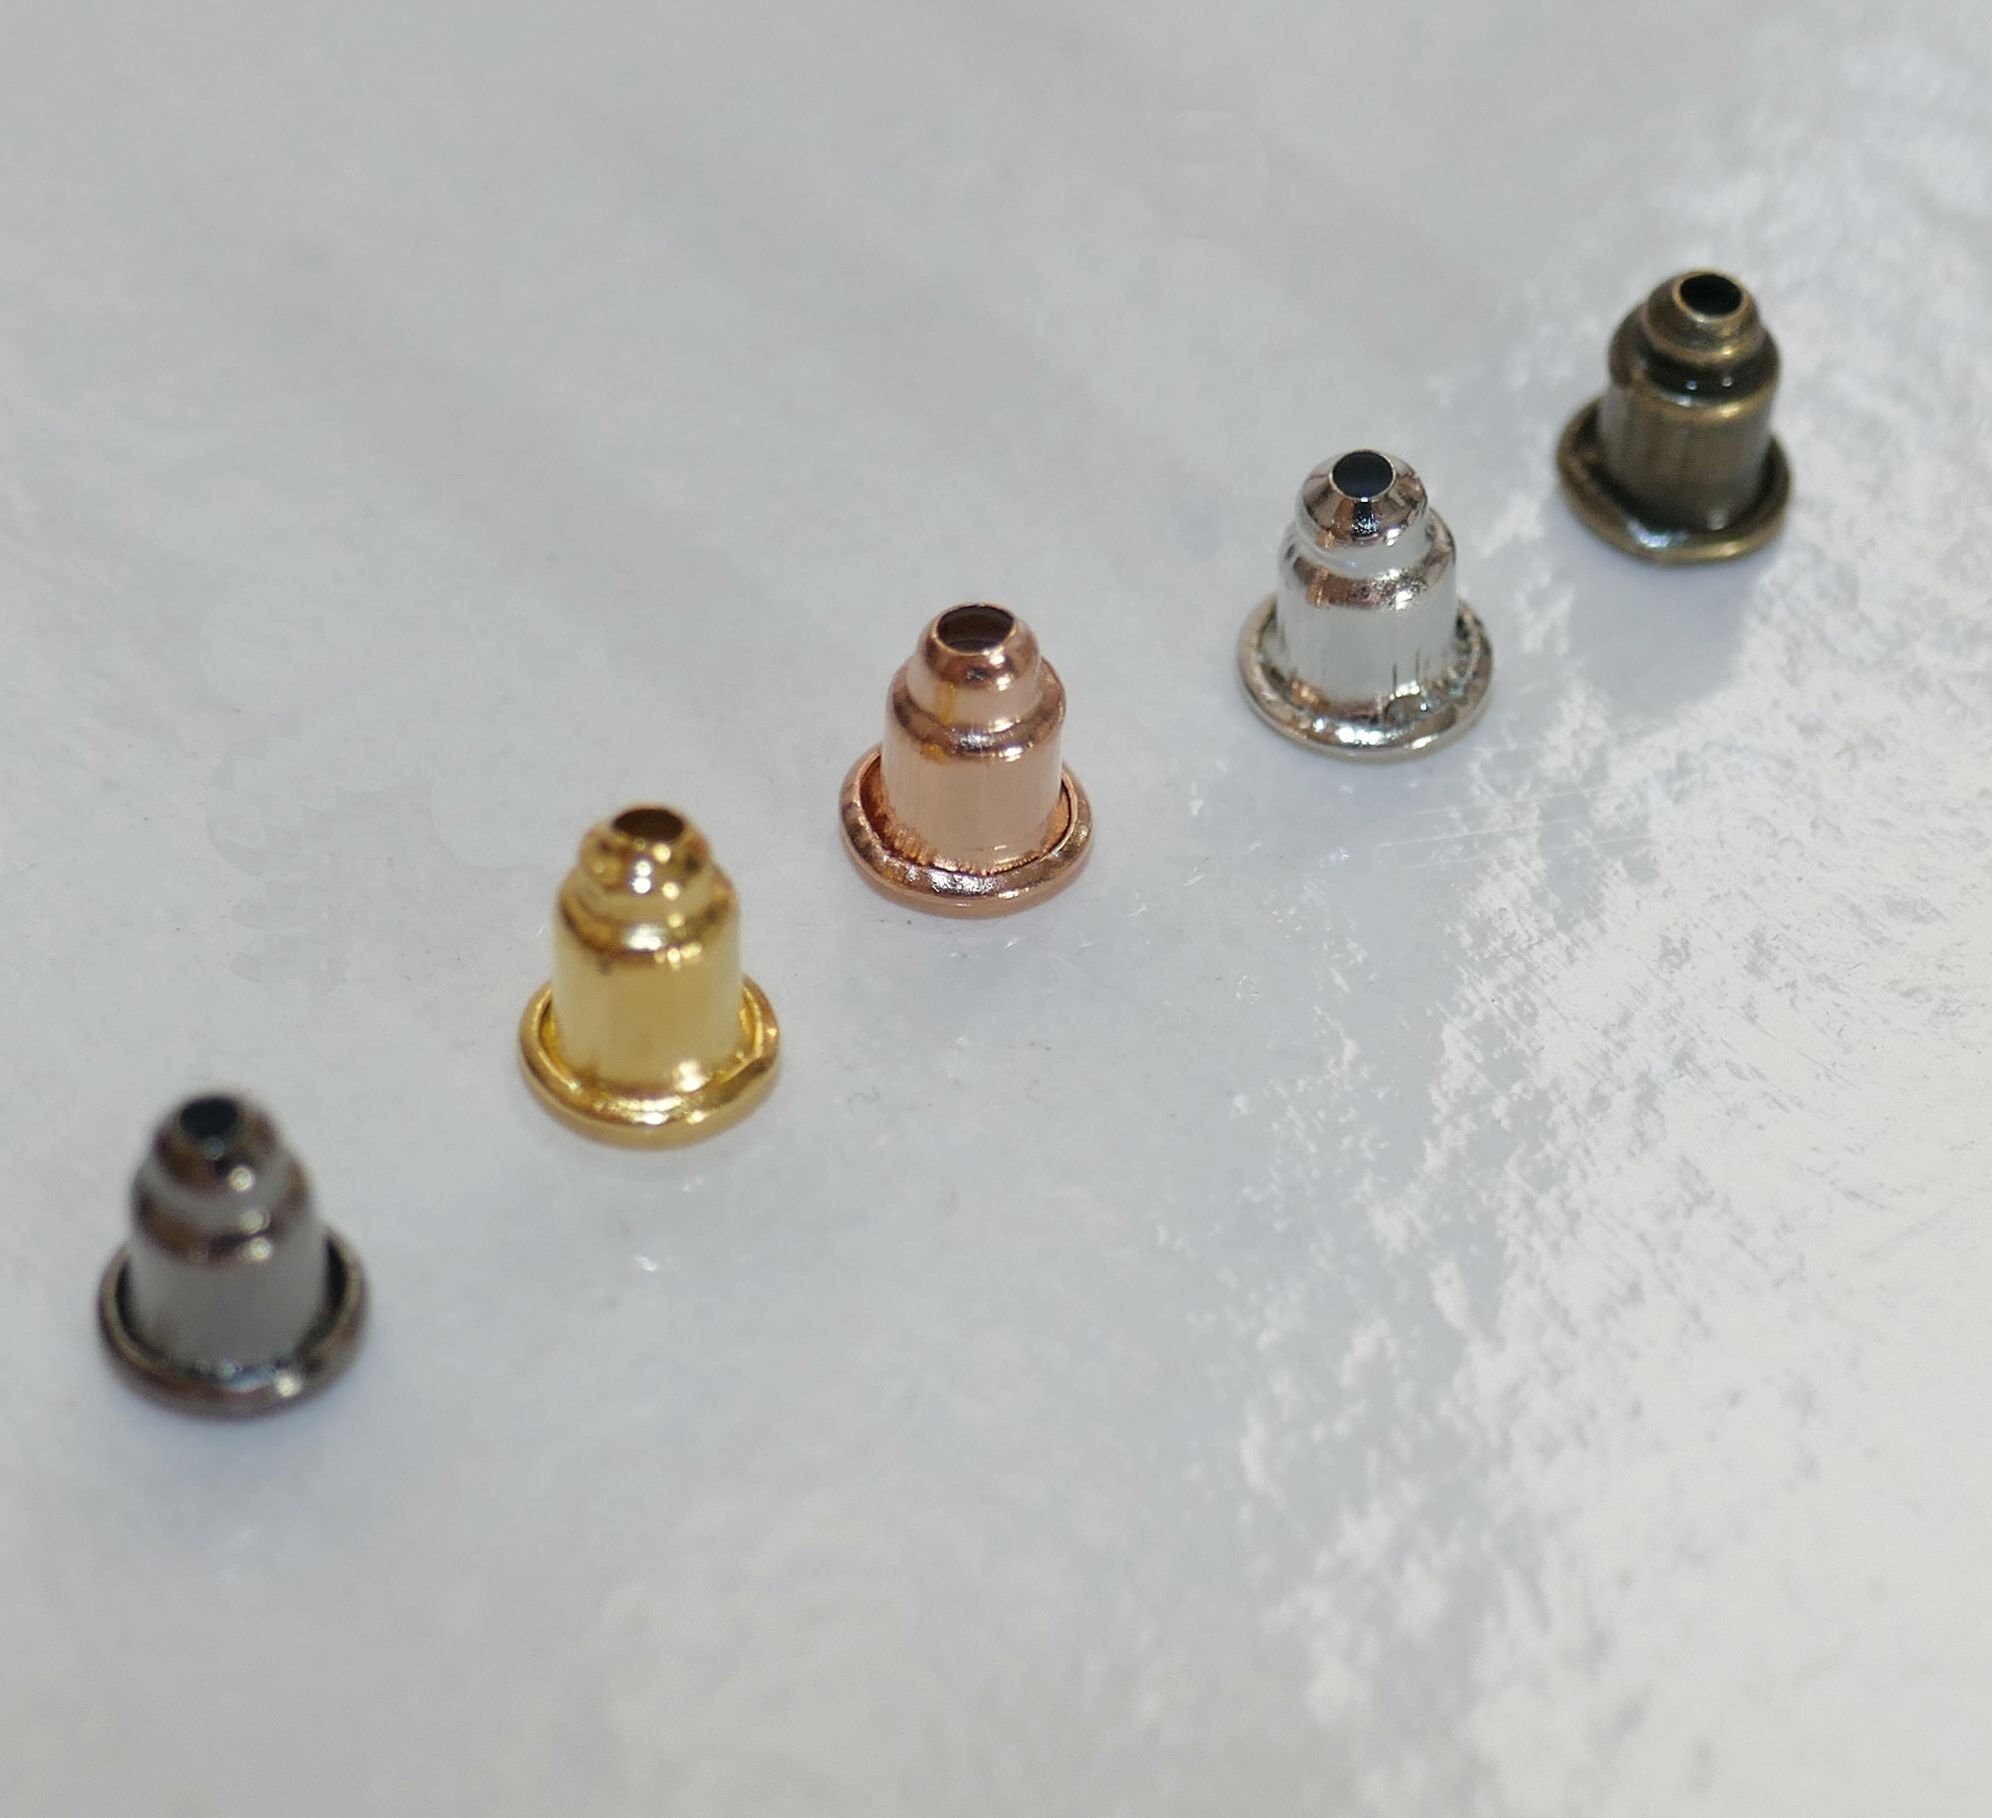 Mazoliy 1000Pcs Bullet Clutch Earring Backs Earring Safety Backs